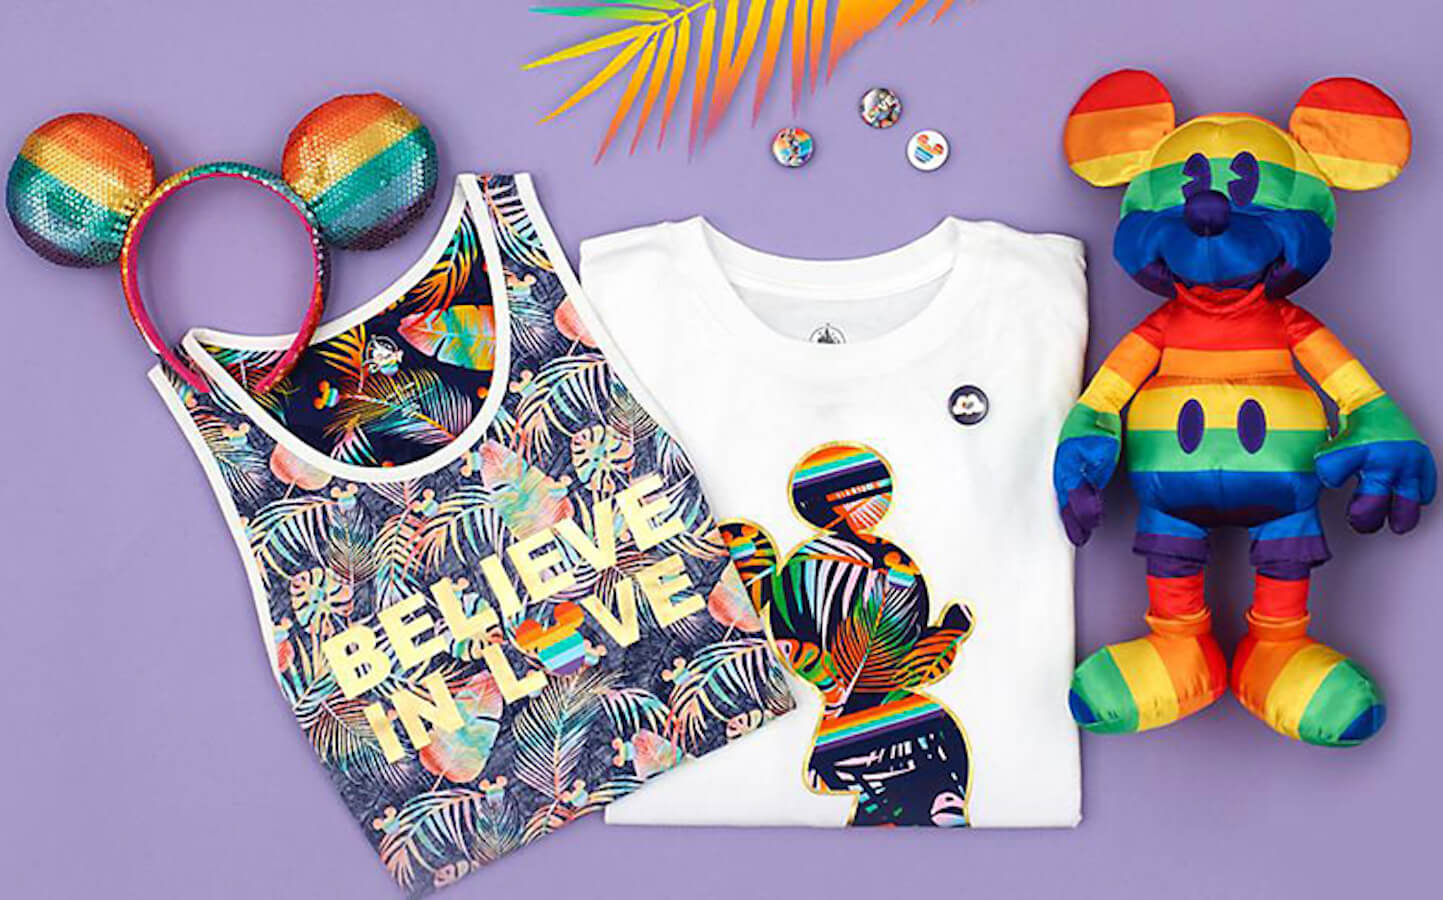 Disney gayfriendly la nuova collezione rainbow in occasione dei pride